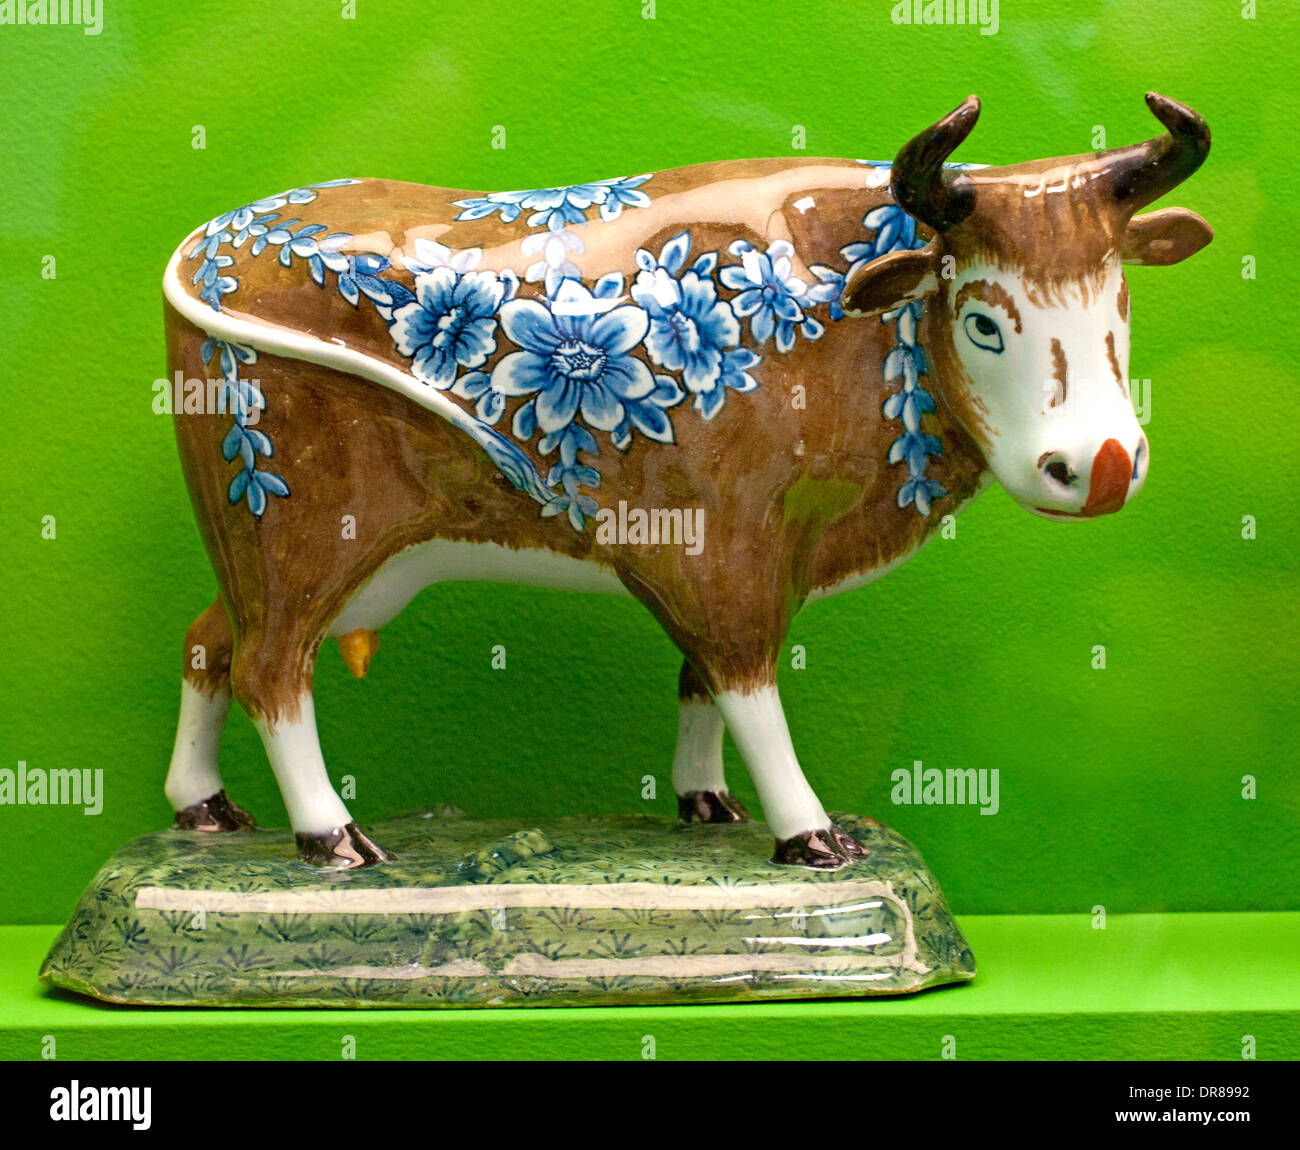 Les vaches vache Delft Delfts 17 - 18 ème siècle porcelaine delft Pays-Bas néerlandais Animaux Banque D'Images